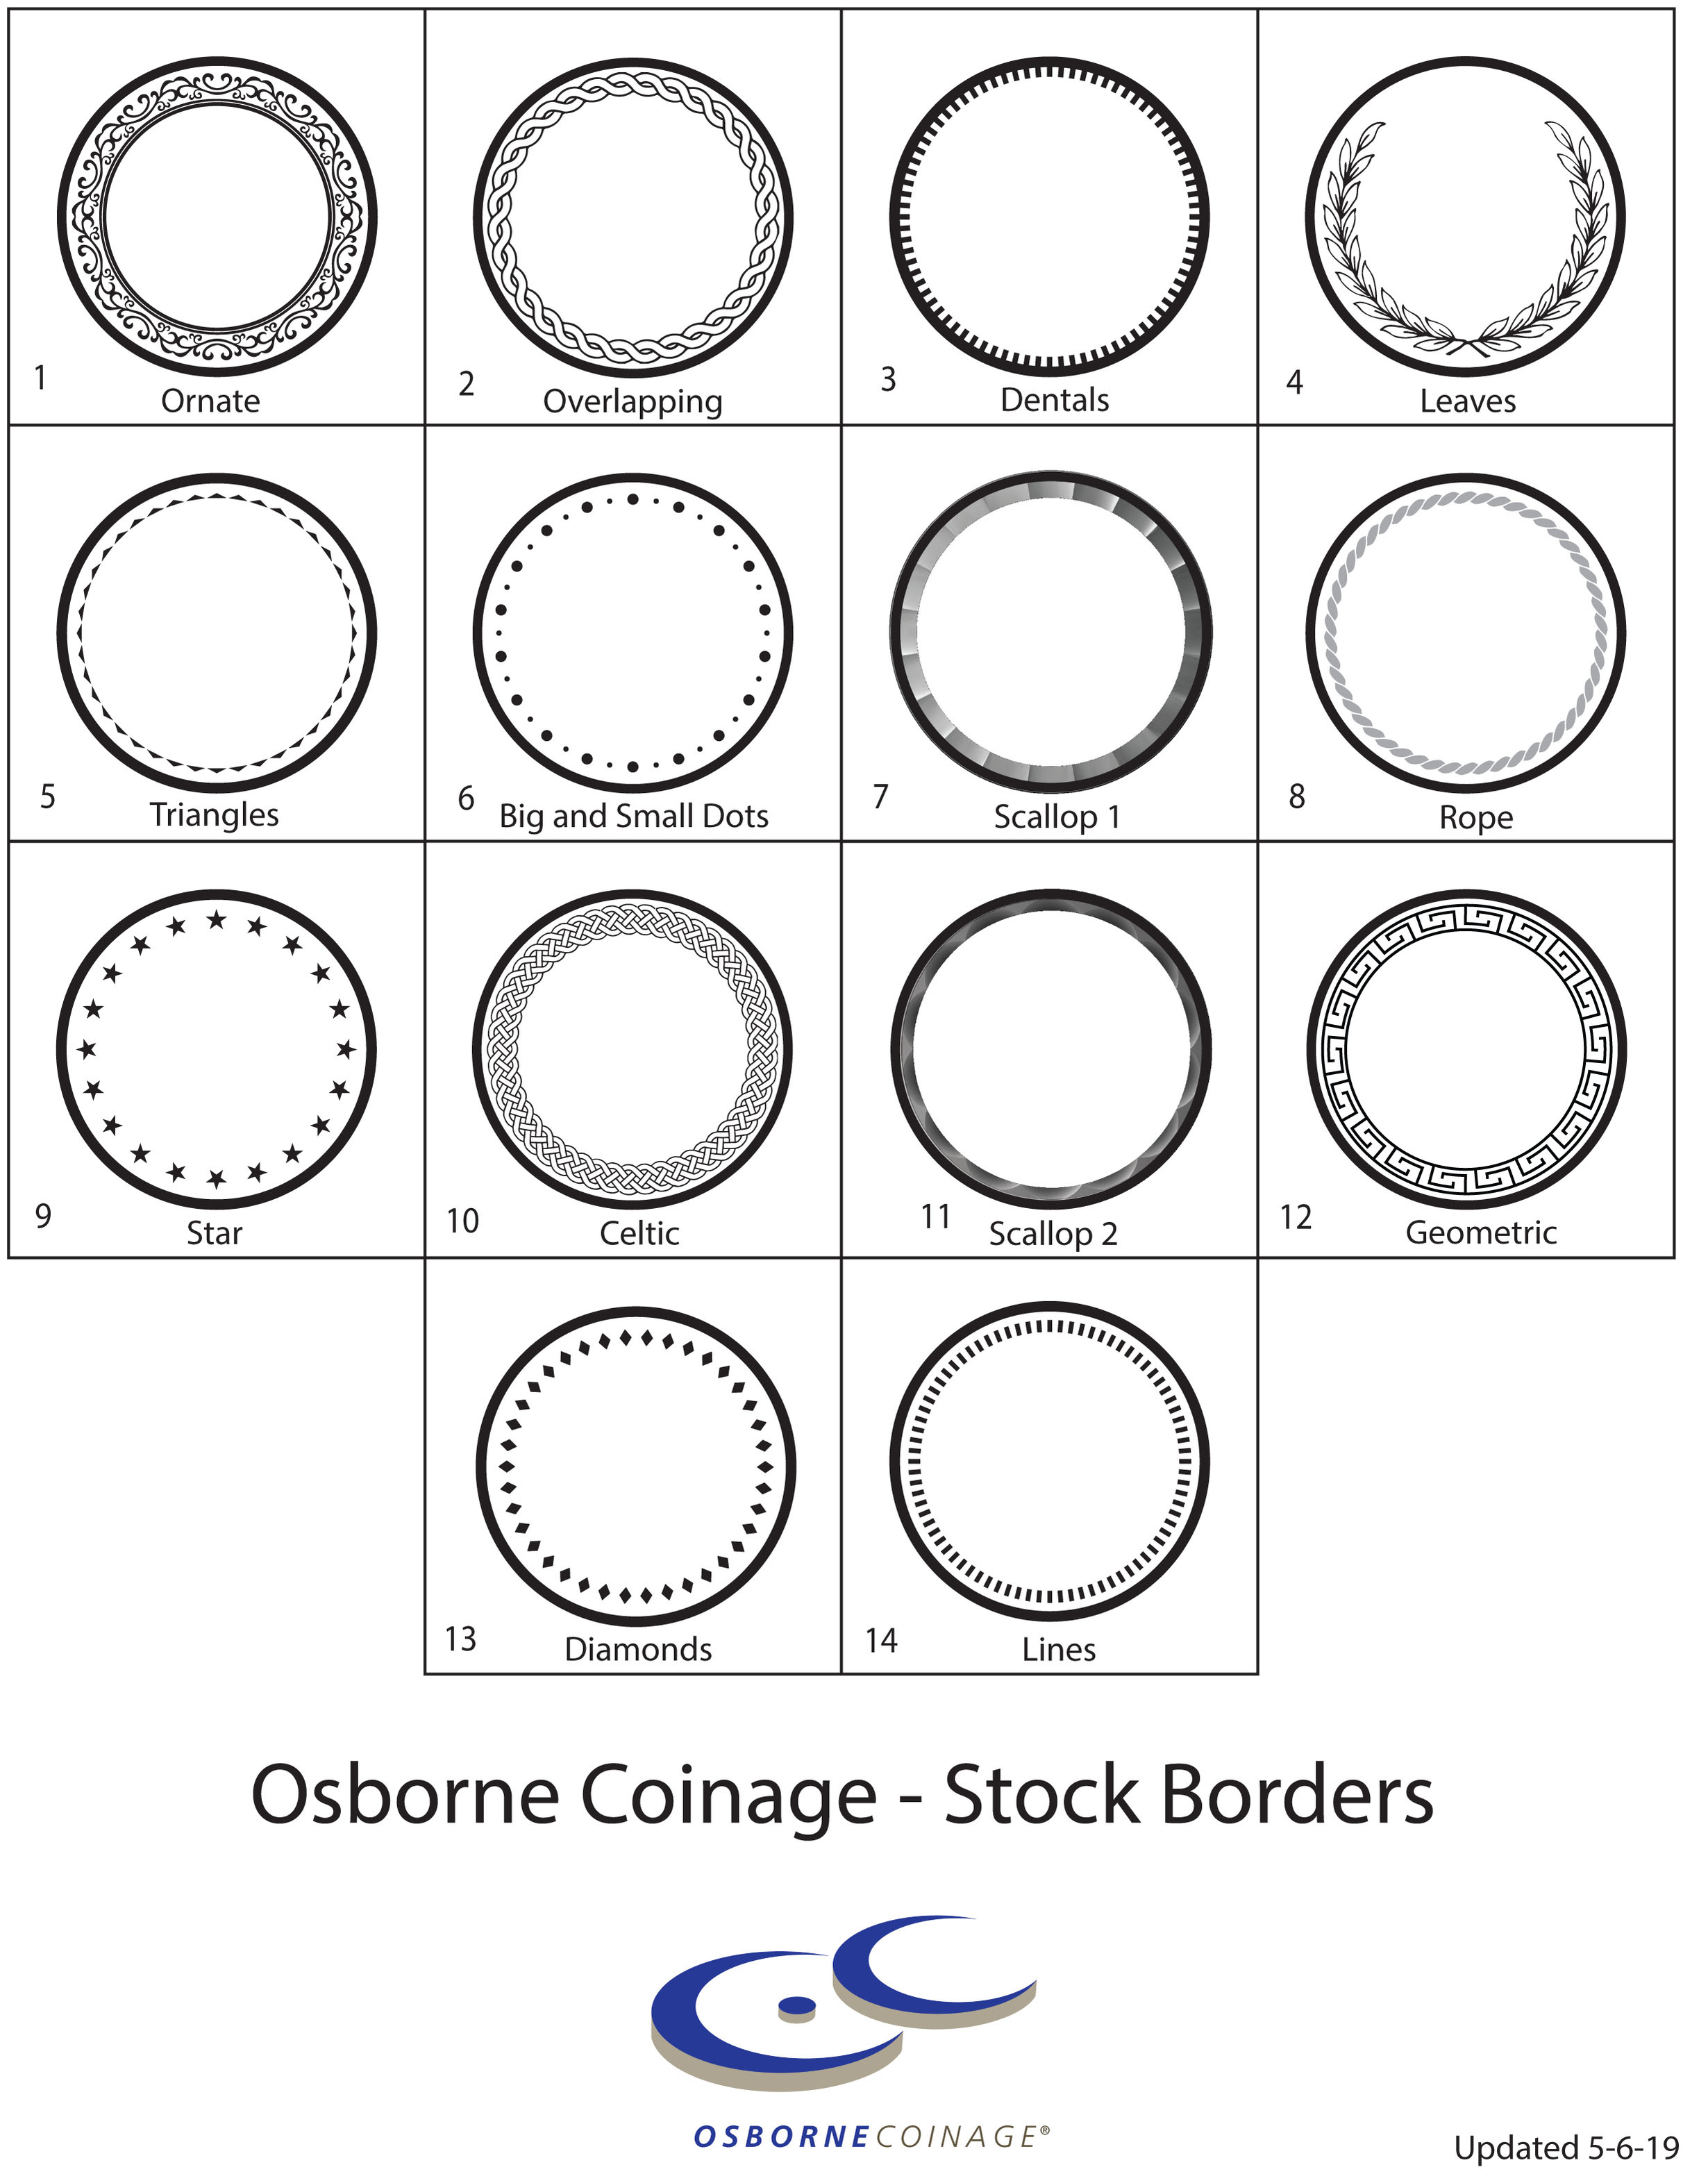 Stock borders